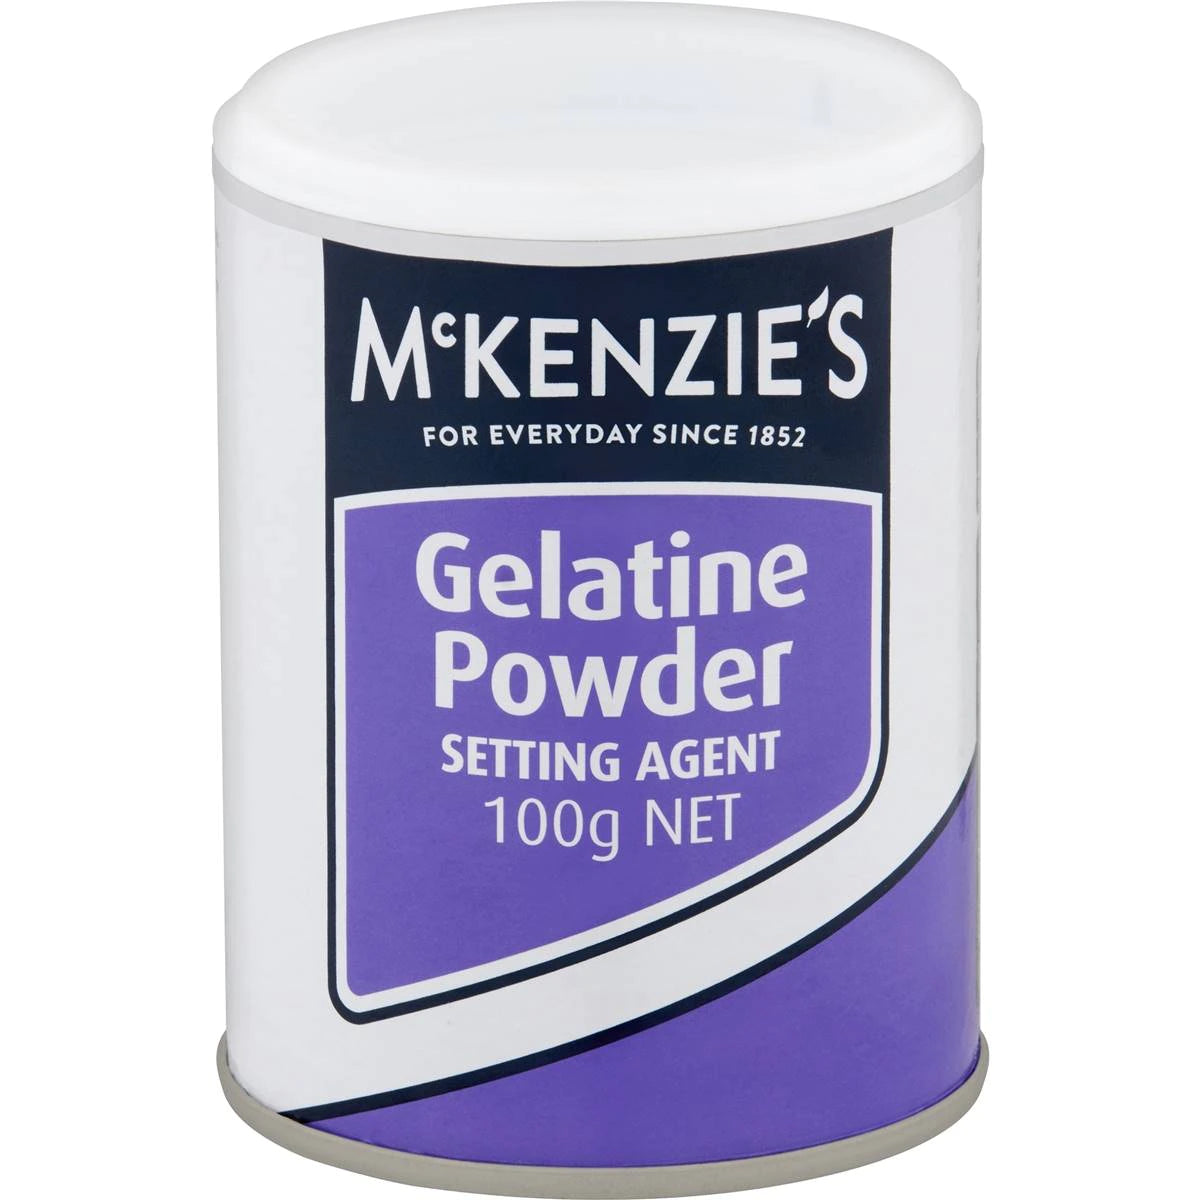 McKenzies Gelatine Powder 100g